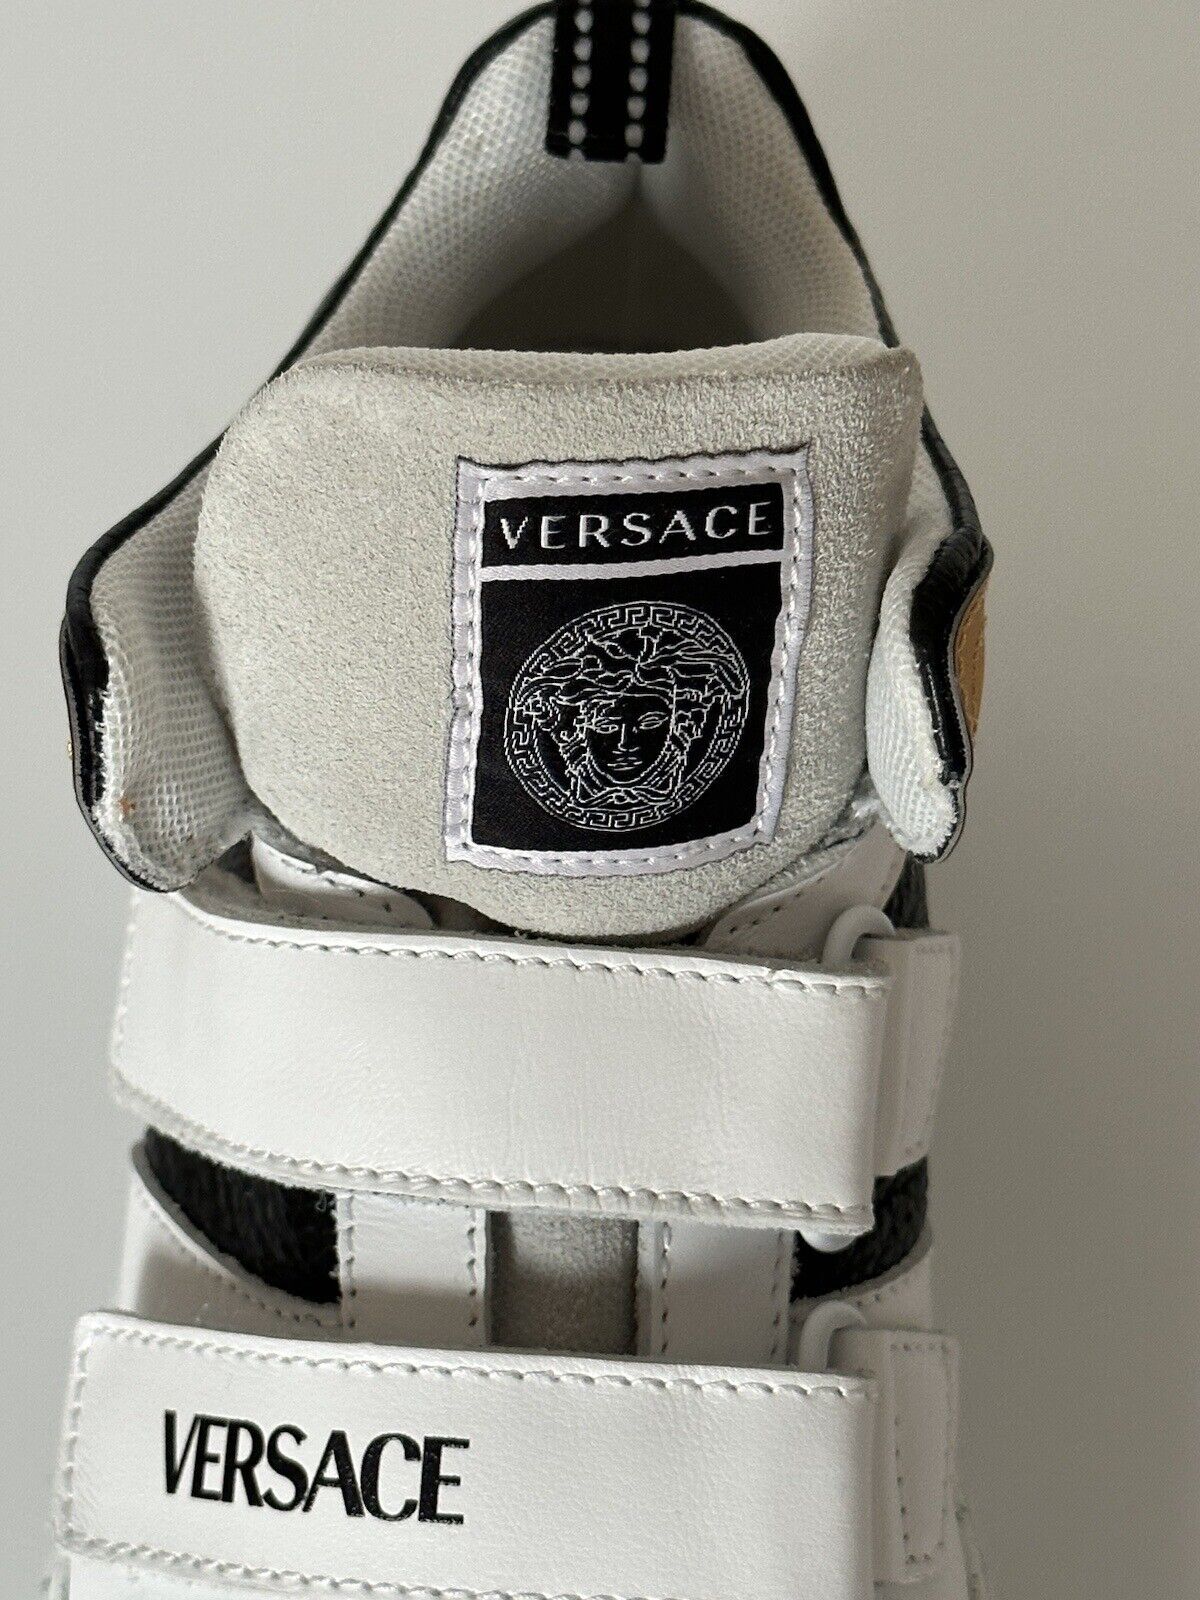 Neu mit Etikett: 575 $ Versace La Greca High-Top-Sneaker für Jungen 34 Euro (9,7 Zoll Länge) Italien 